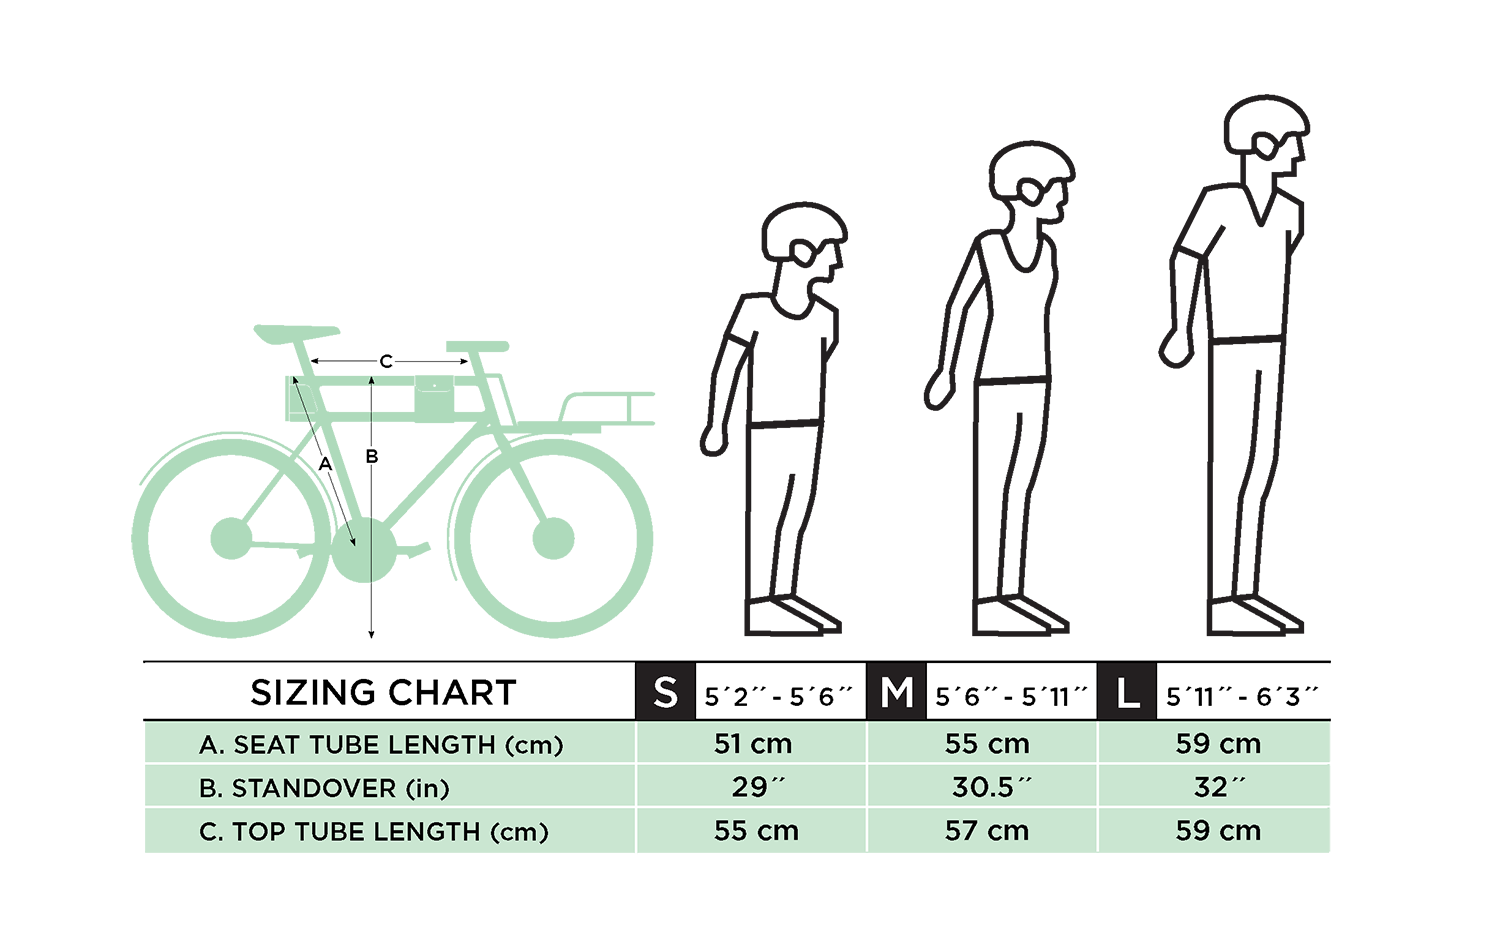 Как подобрать велосипед взрослому. Ростовка рамы велосипеда по росту таблица. Размер горного велосипеда по росту таблица для женщин. Размер рамы велосипеда по росту таблица для детей. Рамы велосипедов по росту таблица.